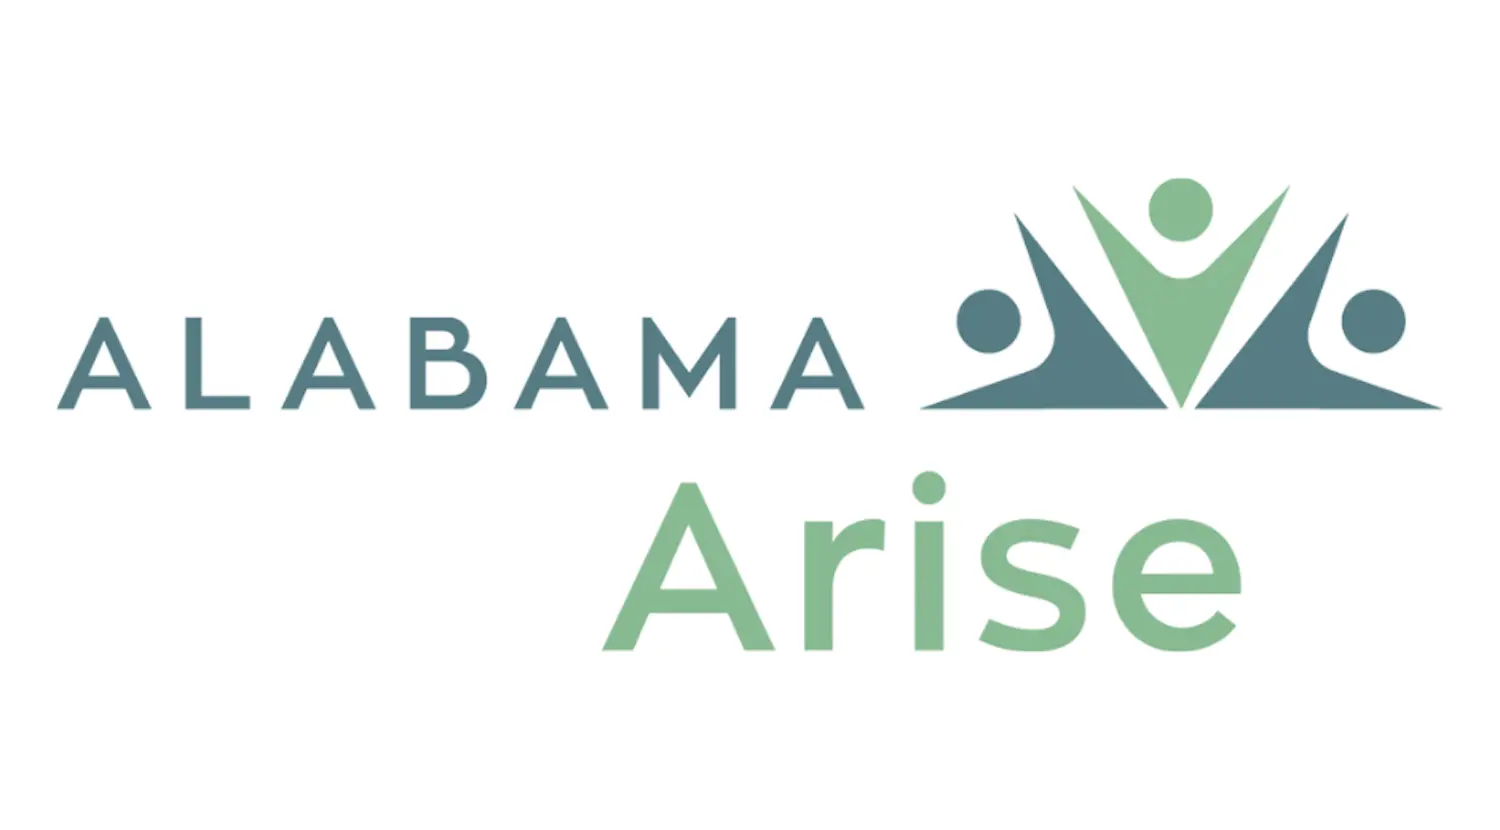 Alabama Arise and Alabama Values launch advocacy program